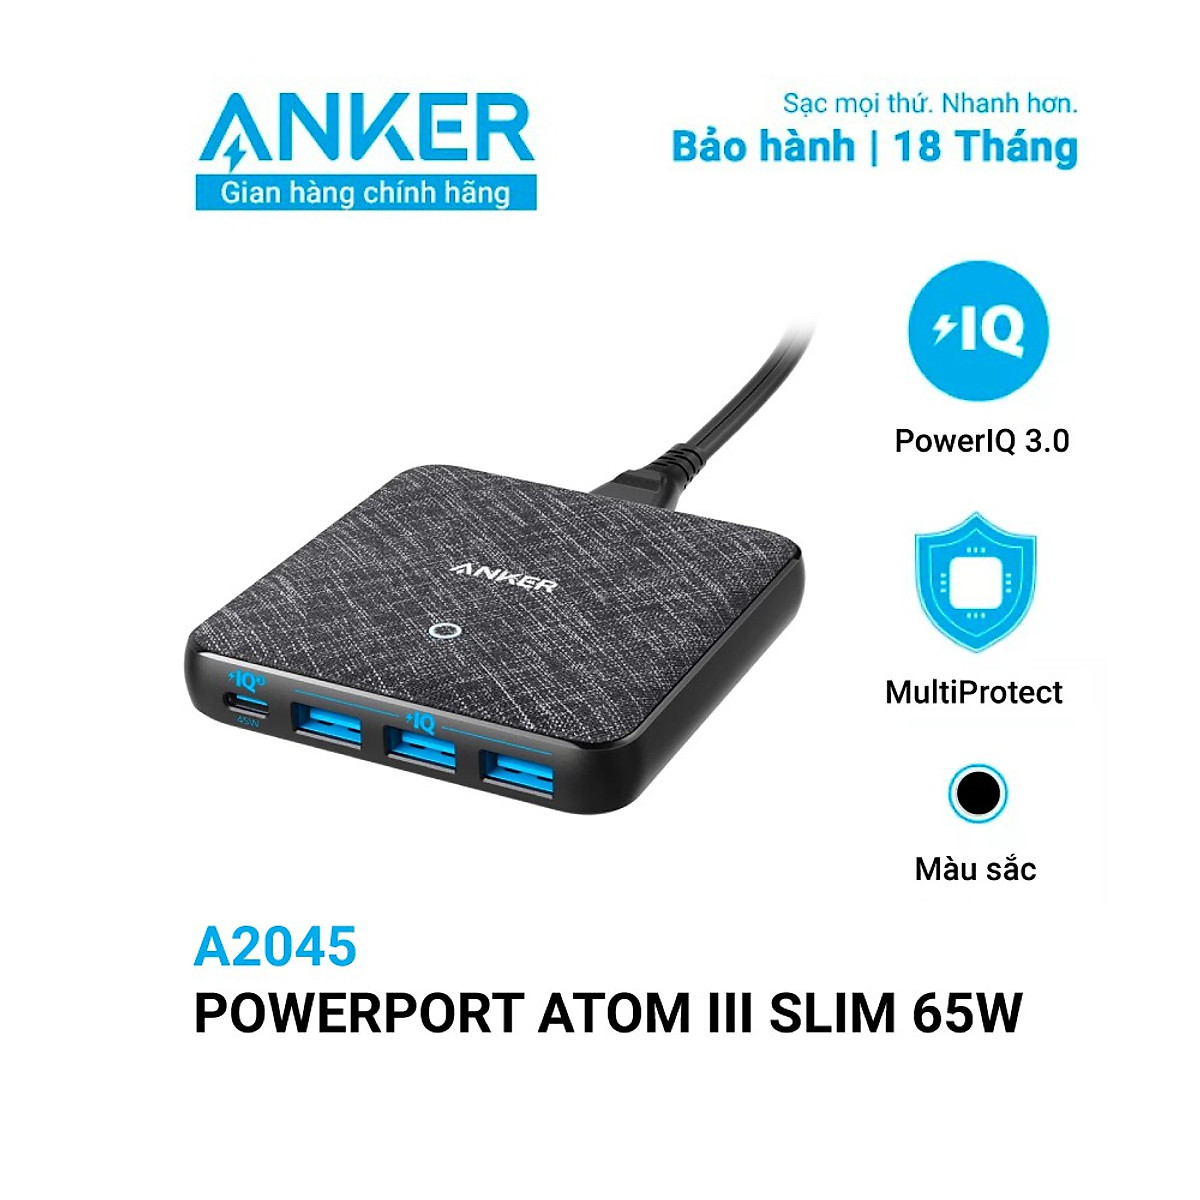 Adapter Sạc 4 Cổng Anker PowerPort Atom III Slim 65W PIQ 3.0 & GaN Tích Hợp USB Type-C Hỗ Trợ Sạc Nhanh - A2045